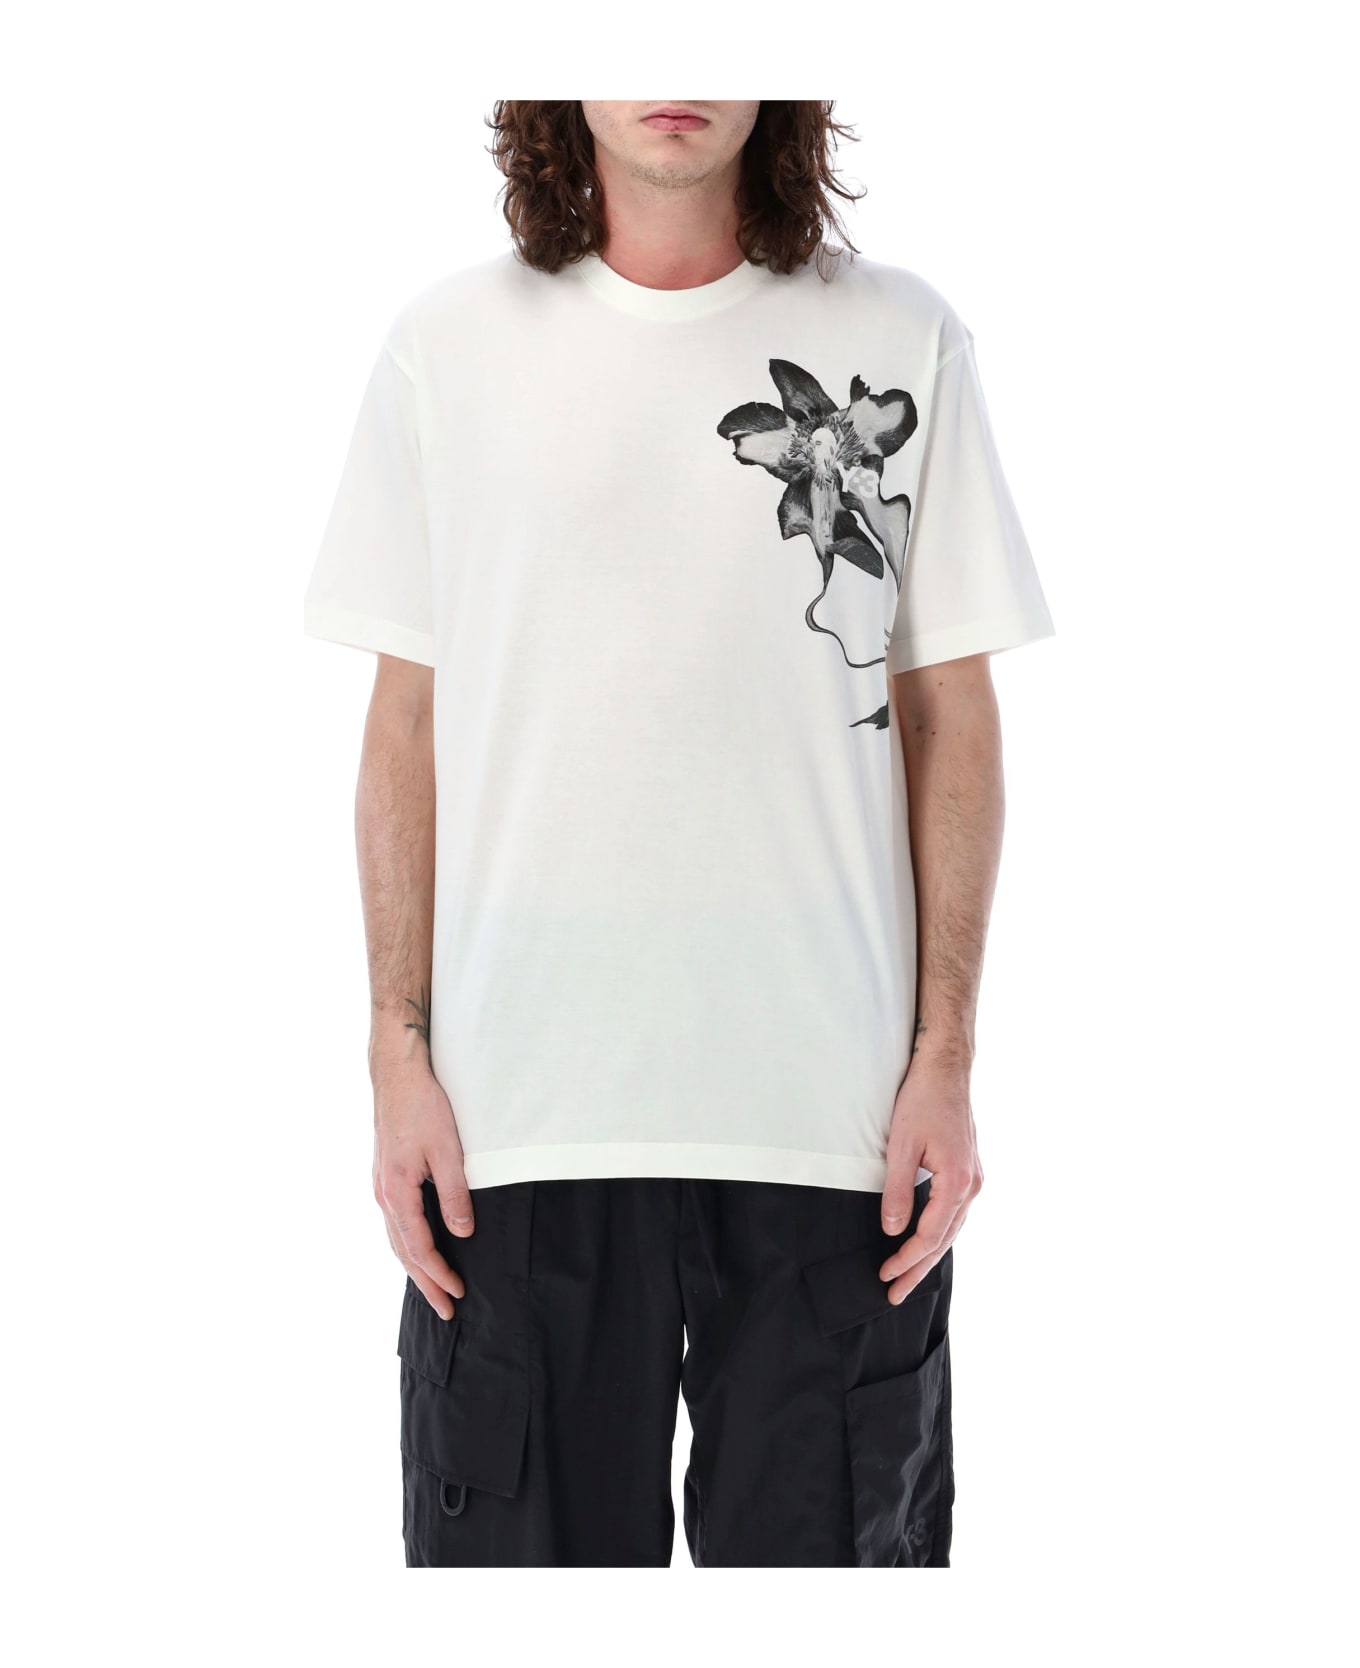 Y-3 Graphic Print T-shirt - WHITE